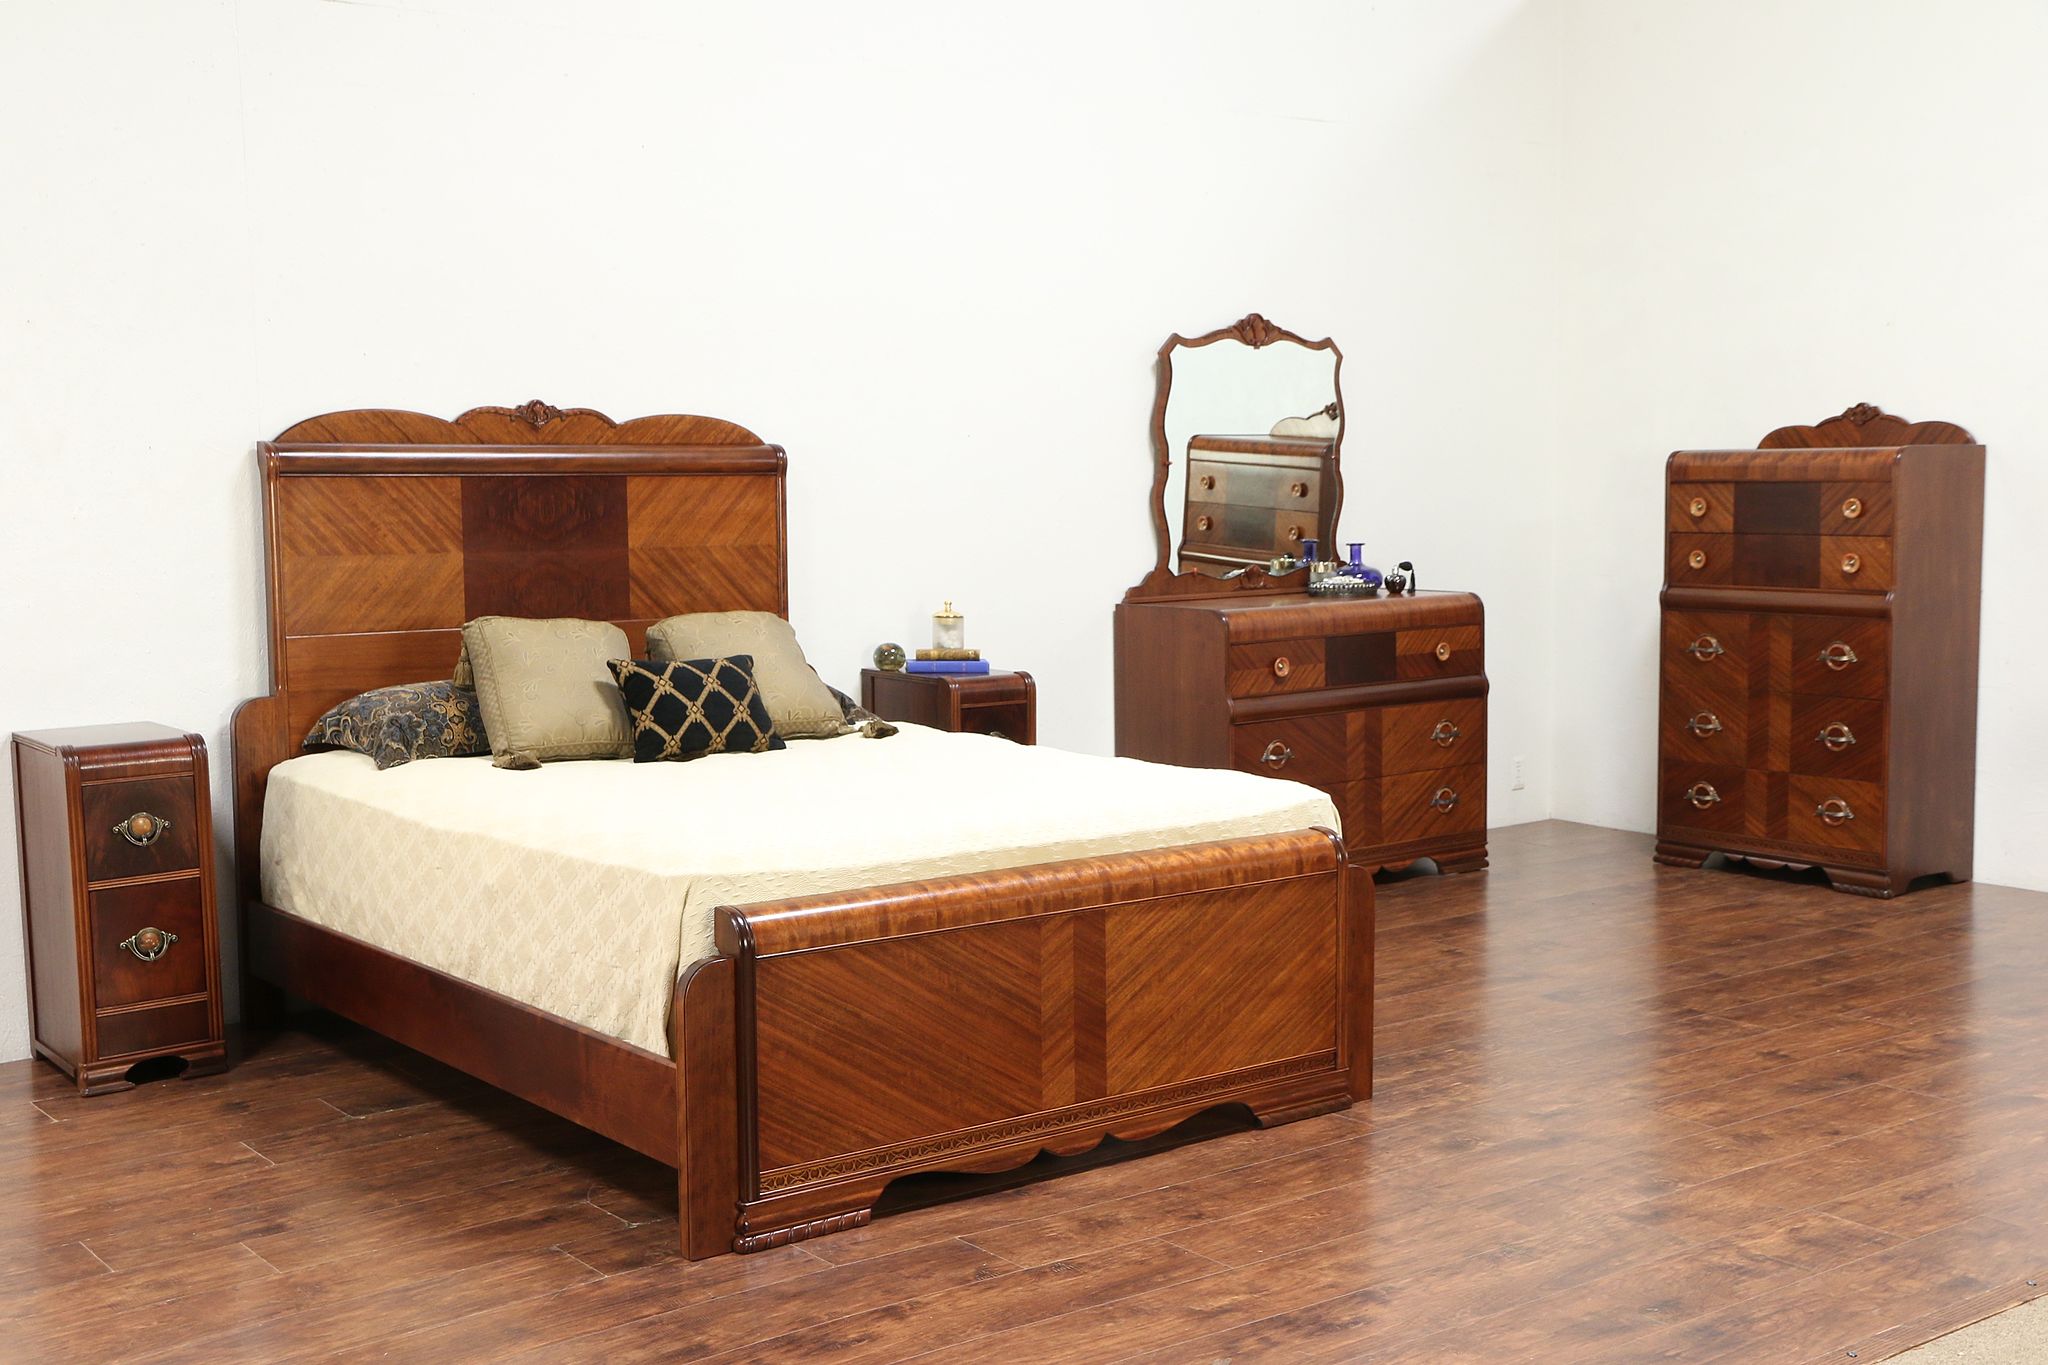 1930s bedroom furniture uk